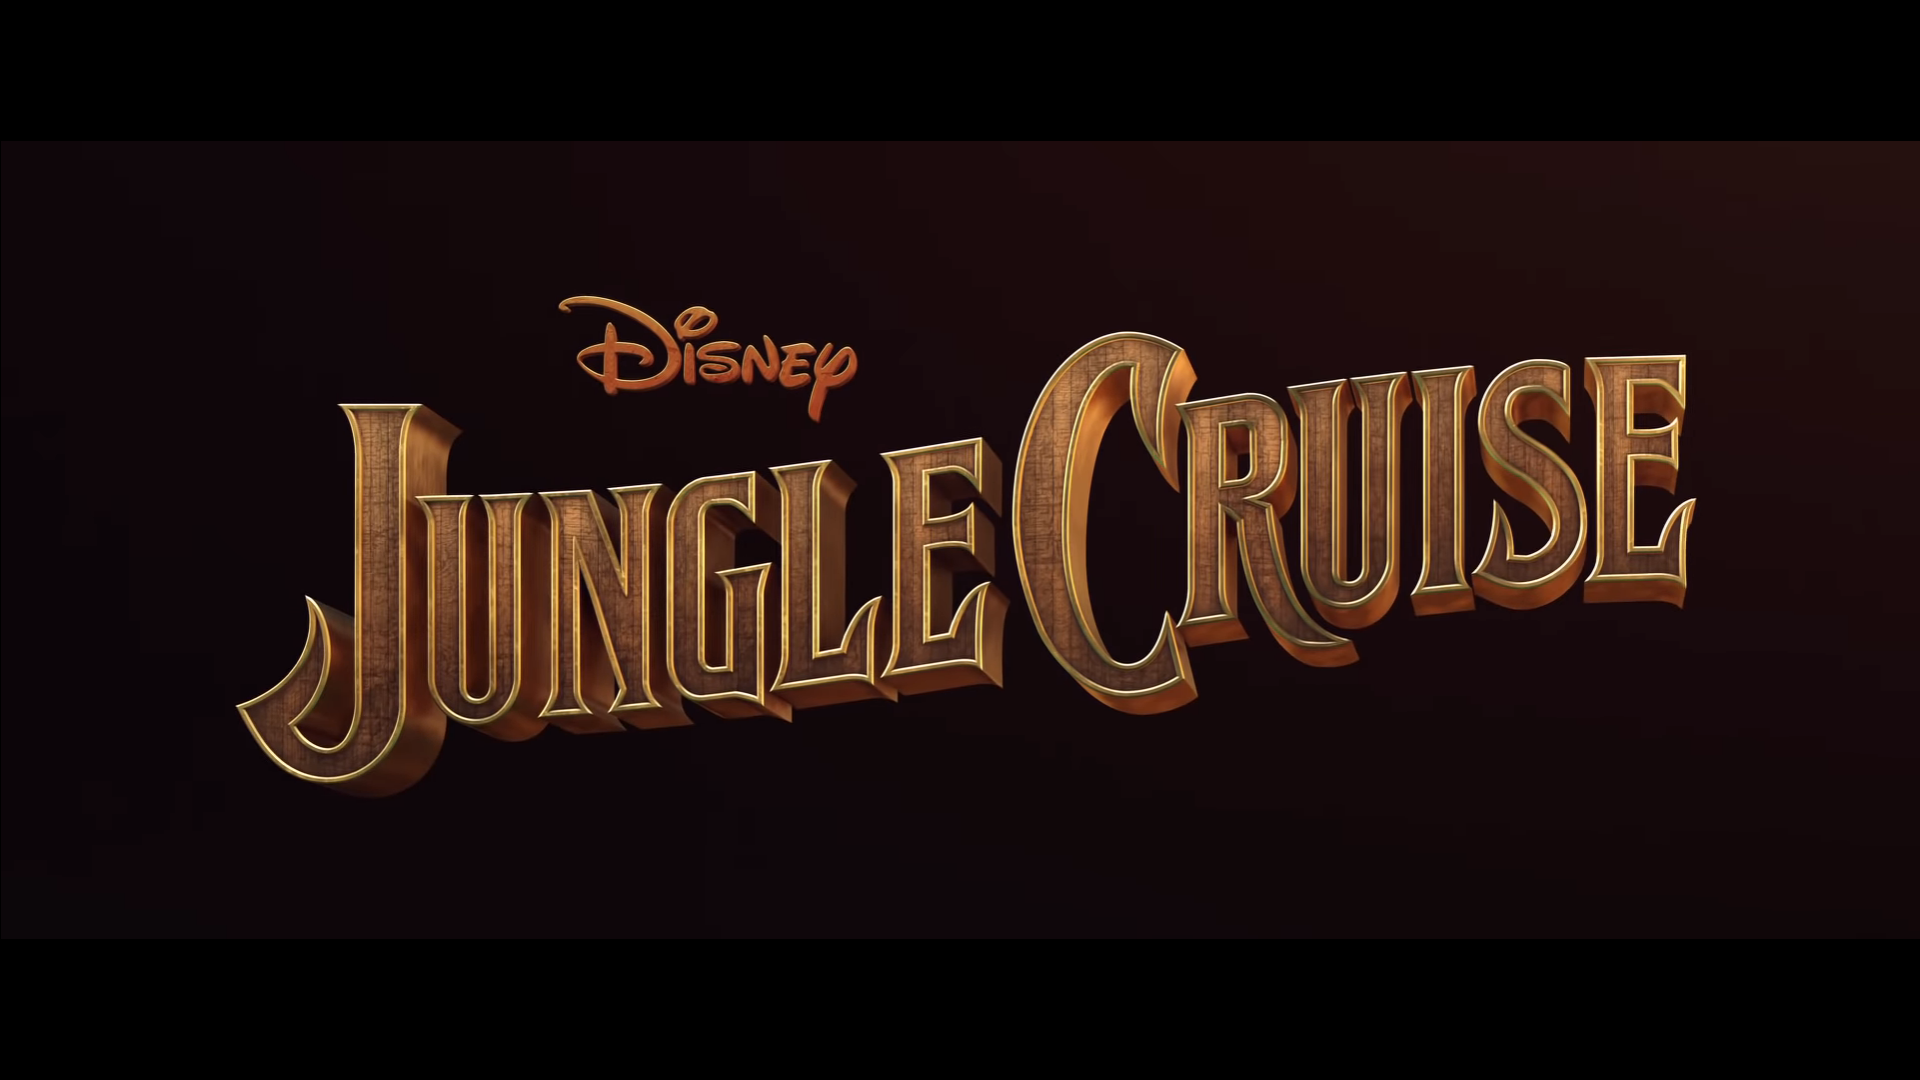 Cùng xem trailer chính thức phim Jungle Cruise, phim hành động vui nhộn dựa trên một khu vui chơi của Disneyland